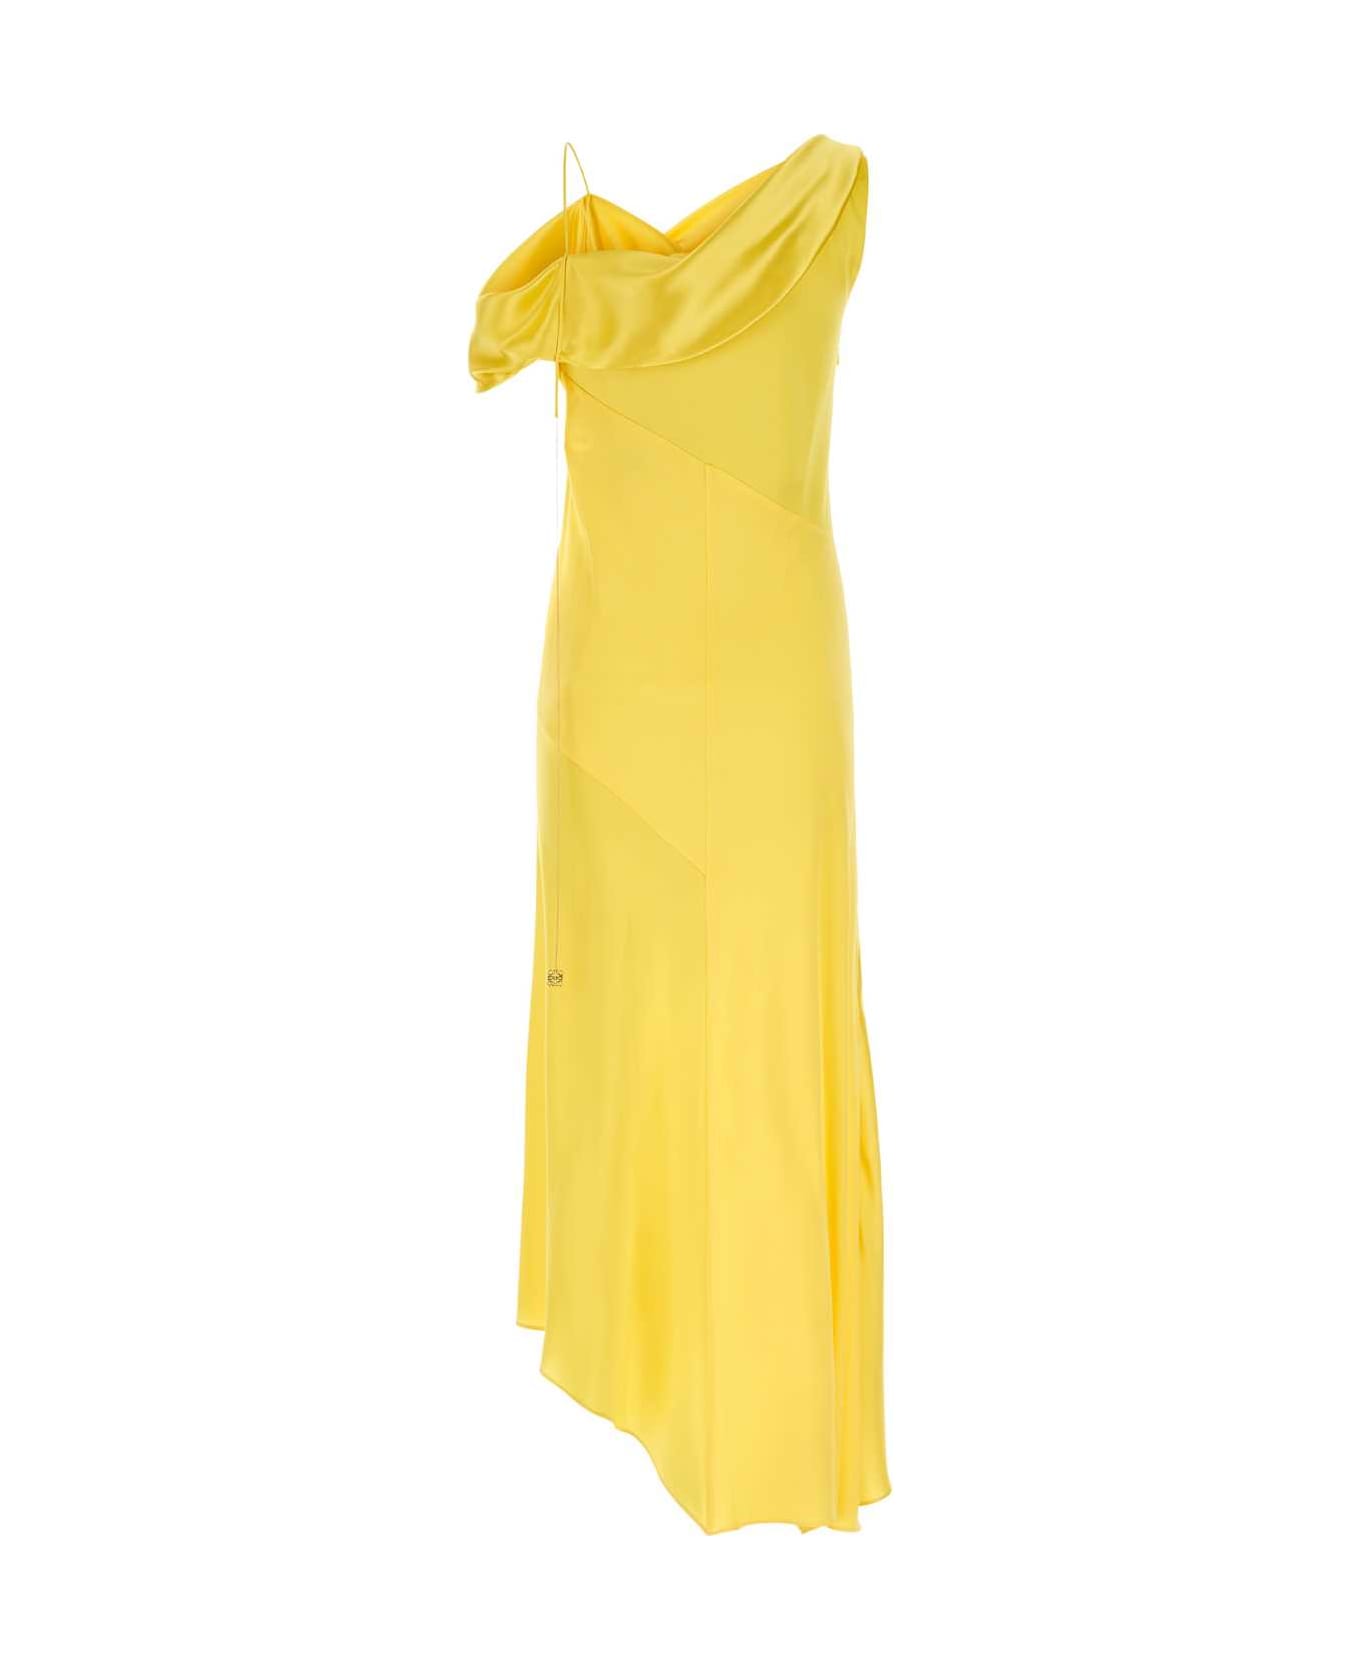 Loewe Yellow Satin Dress - YELLOW